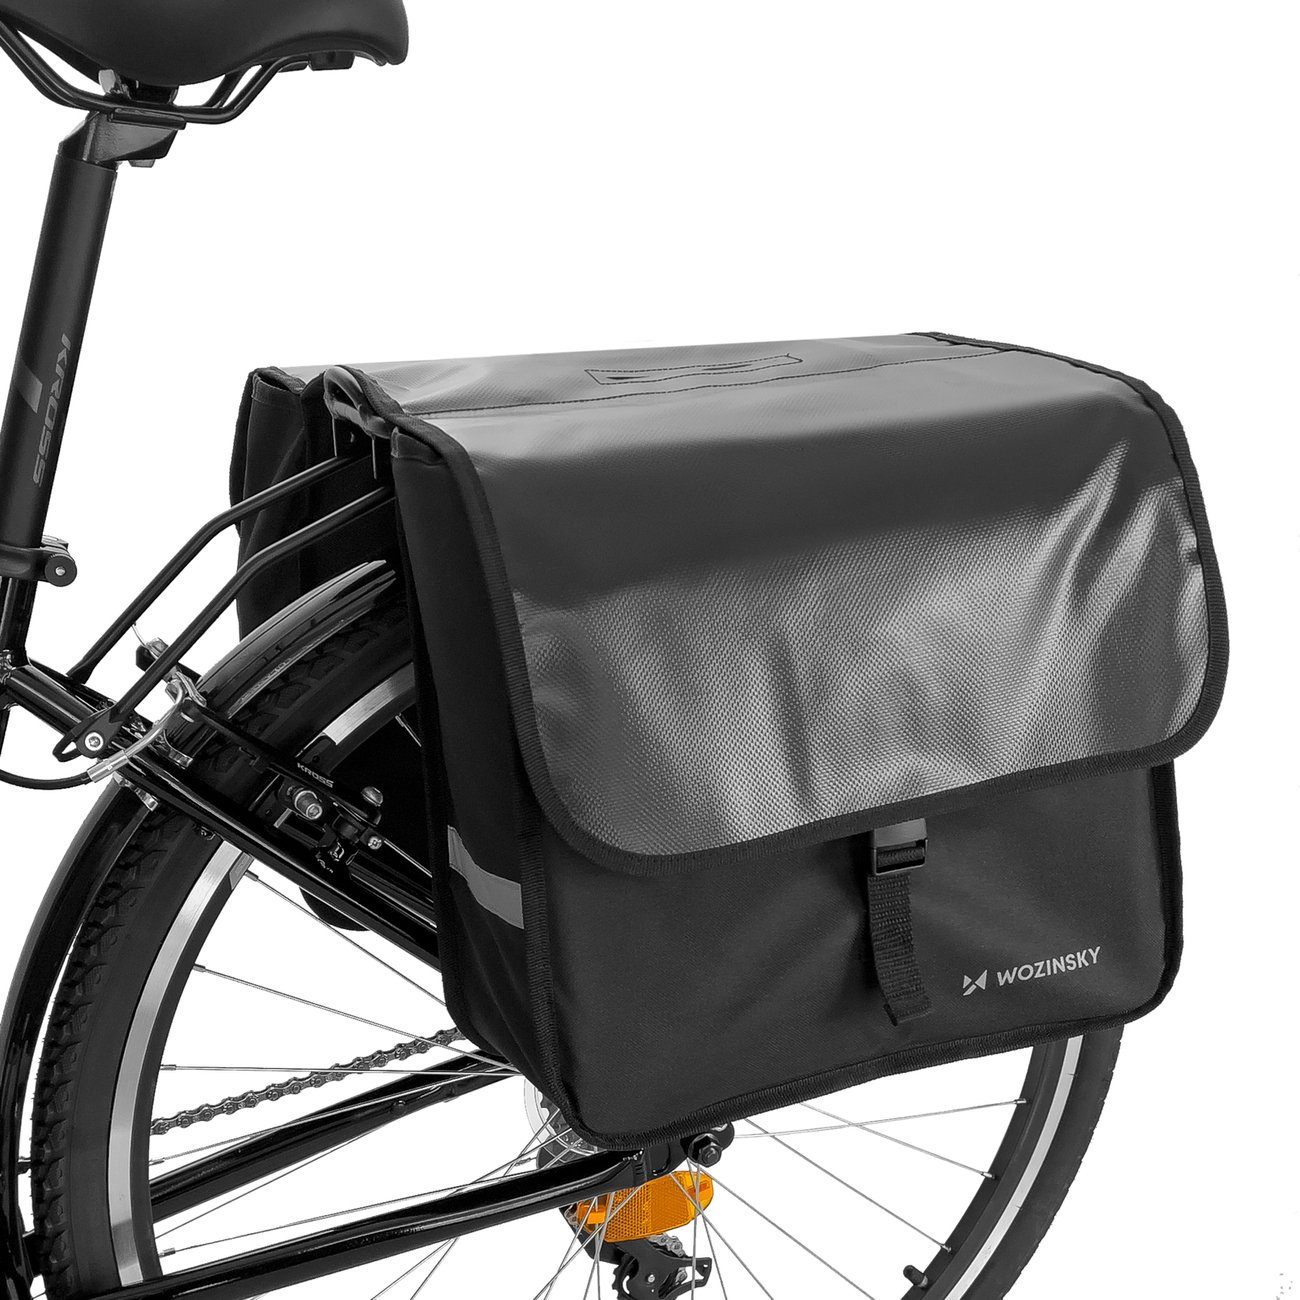 Wozinsky Fahrradtasche »Fahrradtasche Gepäckträger Tasche Wasserdichte  Reisetasche für Fahrrad, Mountainbike, Ebike, MTB, Rennradtasche 28 L«  online kaufen | OTTO